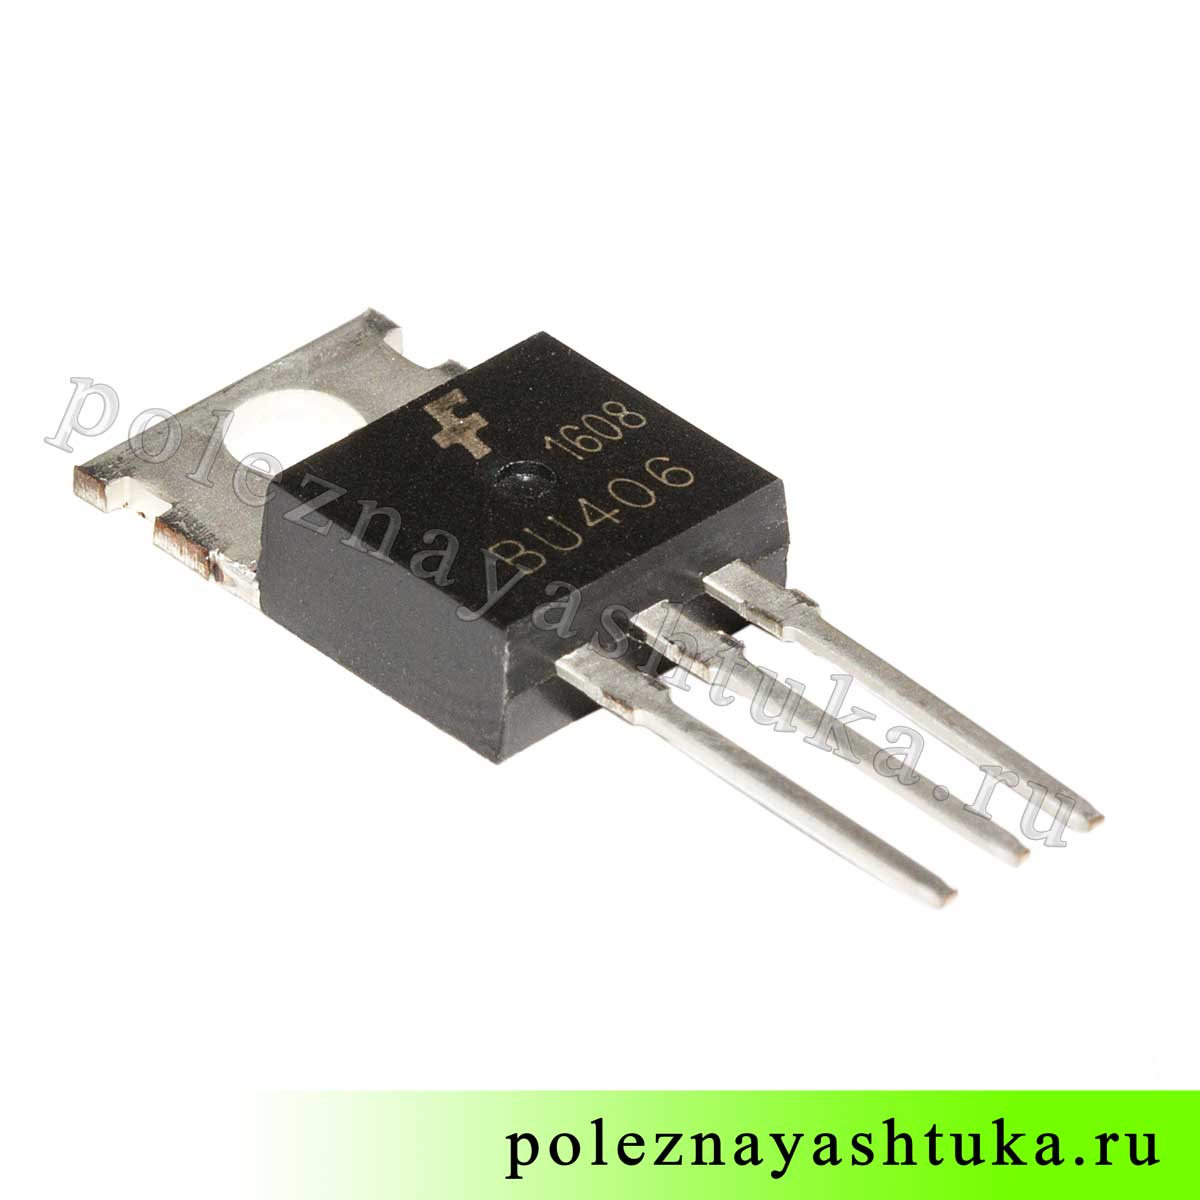 Транзистор BU406 для ультразвукового увлажнителя воздуха